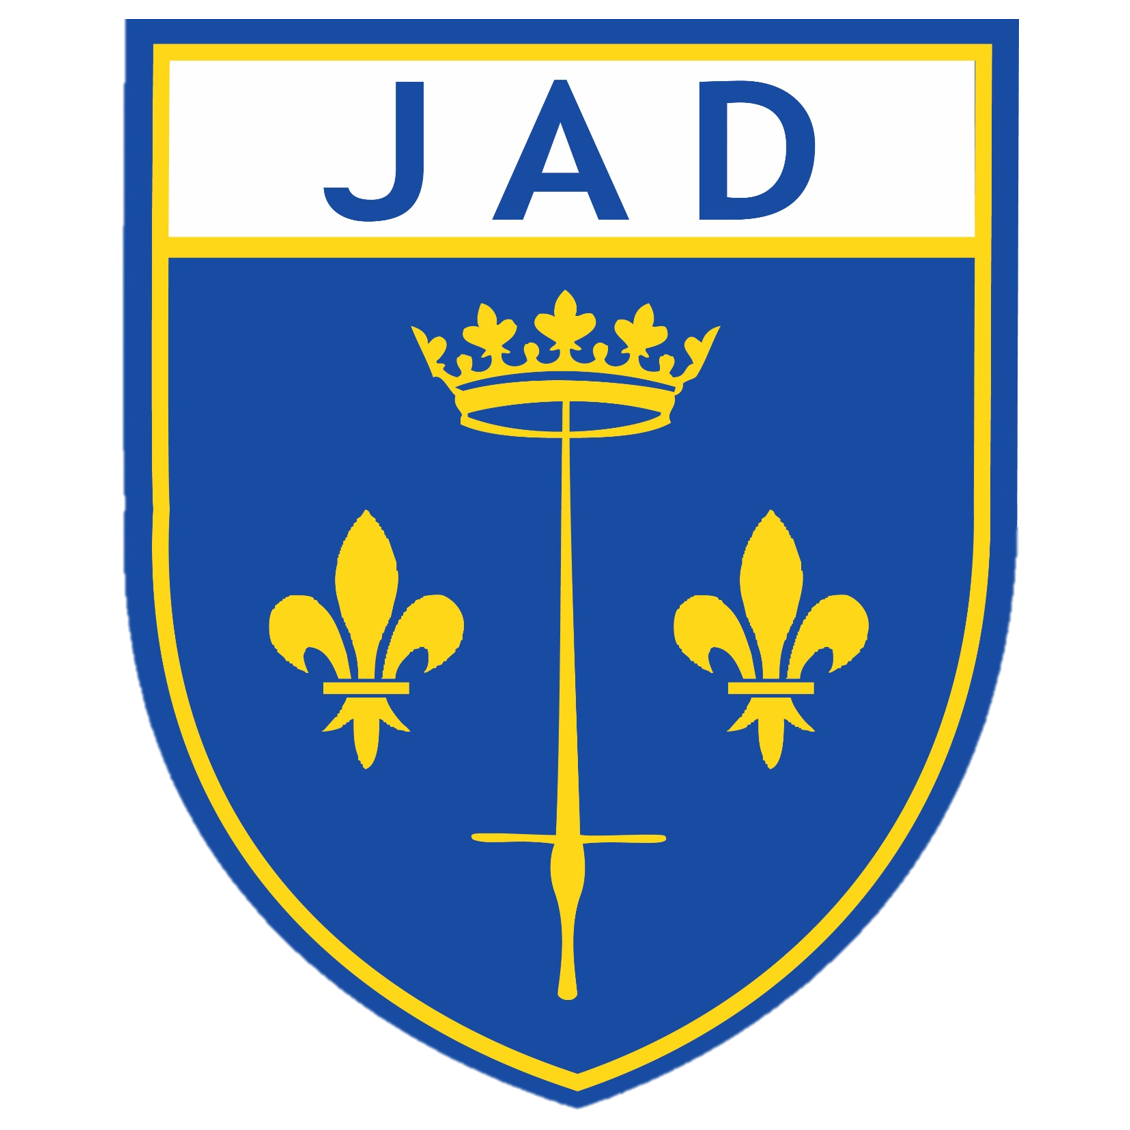 Wappen La Jeanne d'Arc de Dax  124343